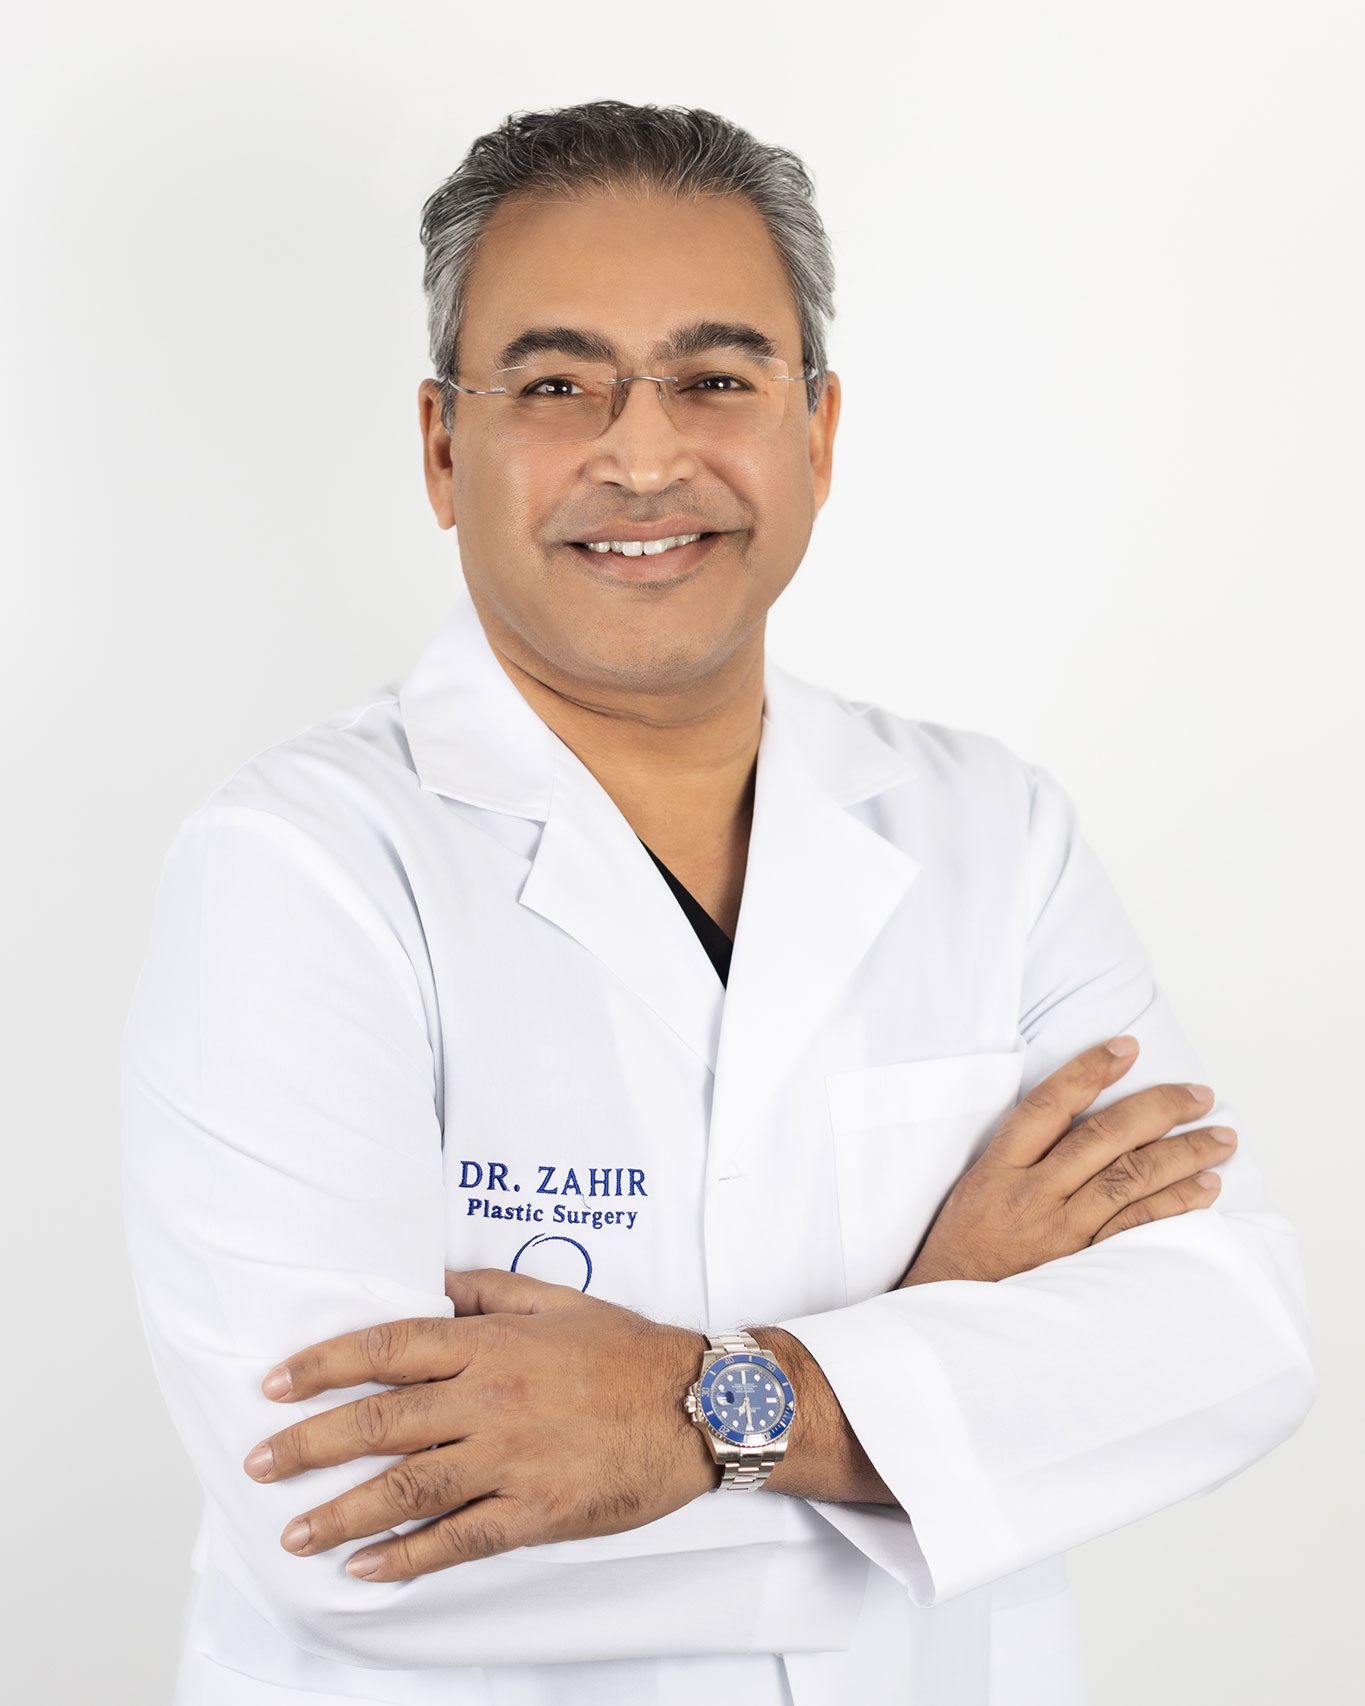 Dr. Zahir